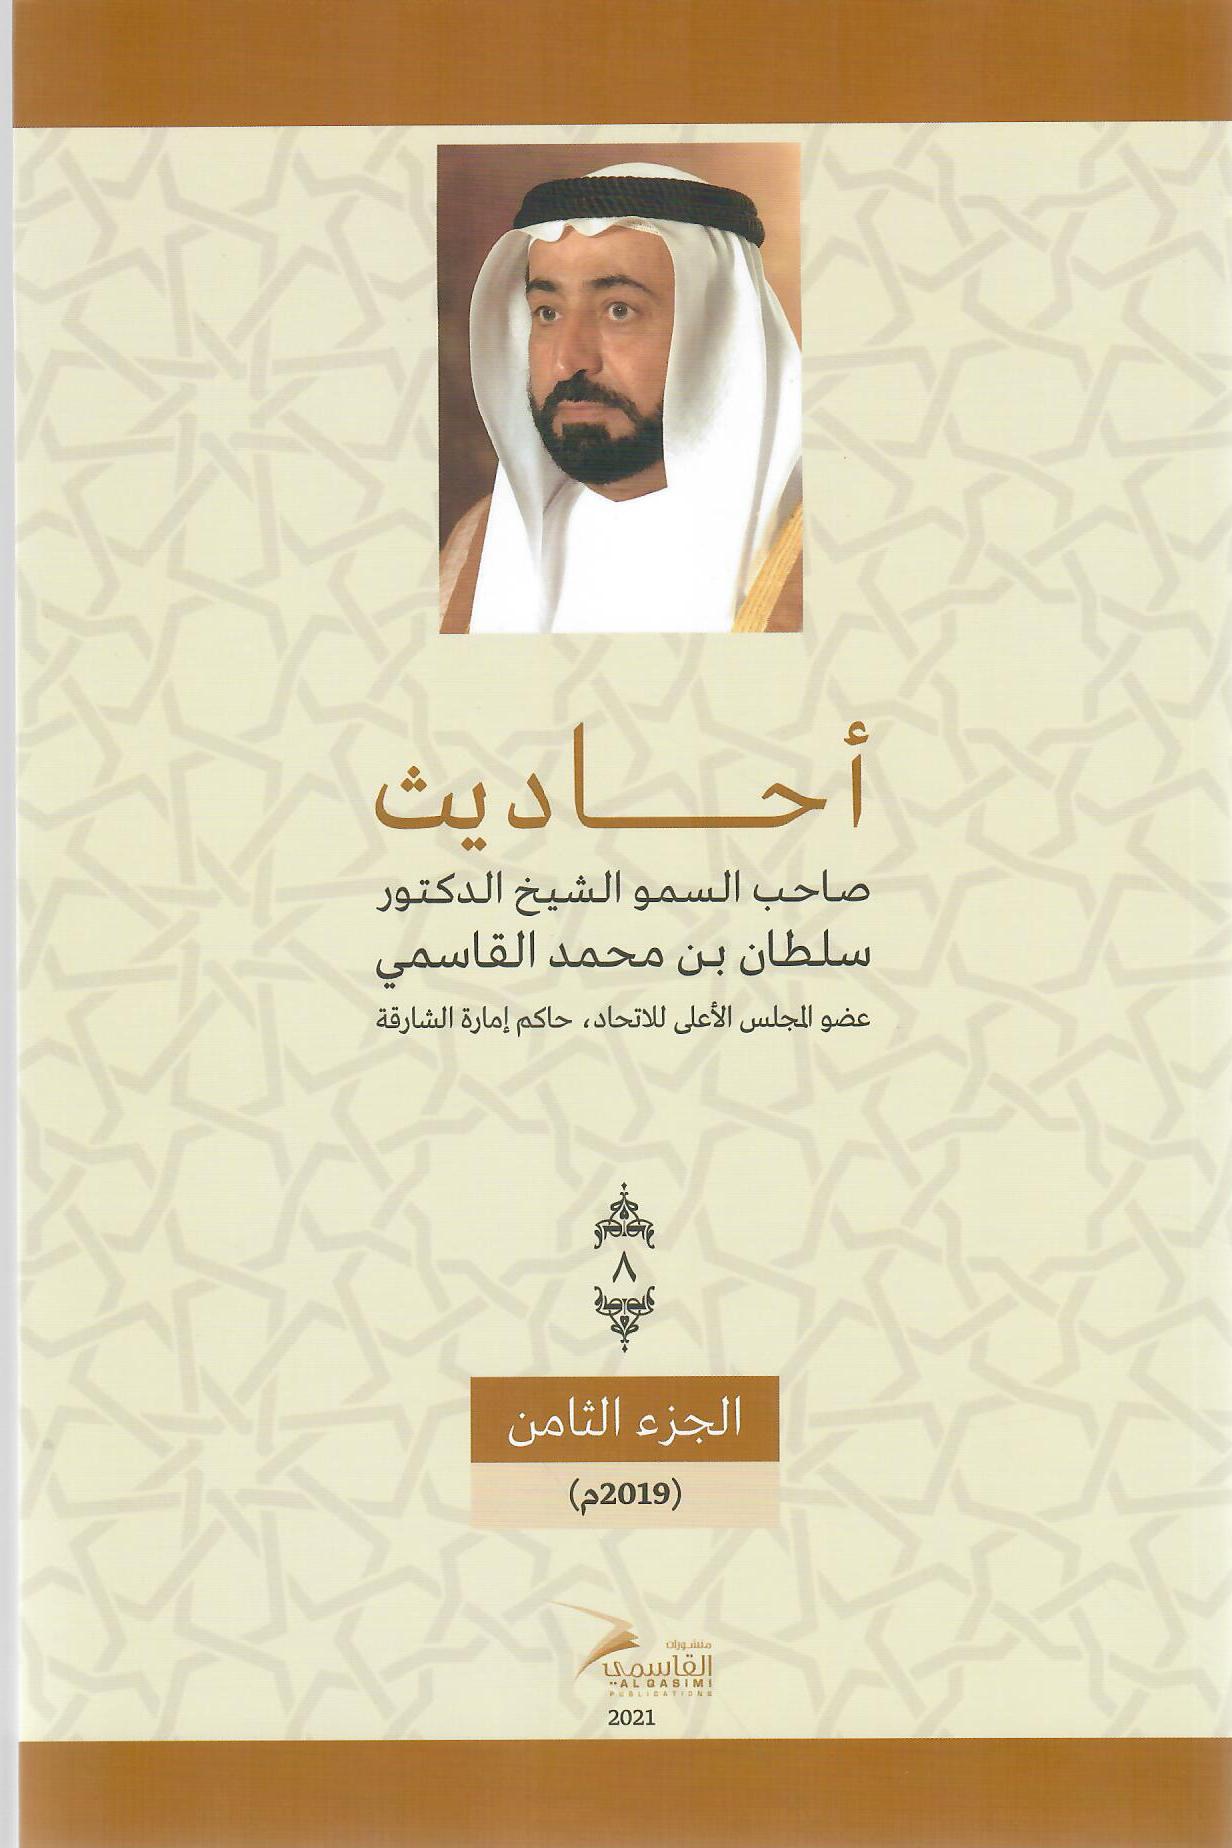 أحاديث صاحب السمو الشيخ الدكتور سلطان بن محمد القاسمي عضو المجلس الأعلى حاكم الشارقة ( 1972م - 2018م) الجزء الثامن